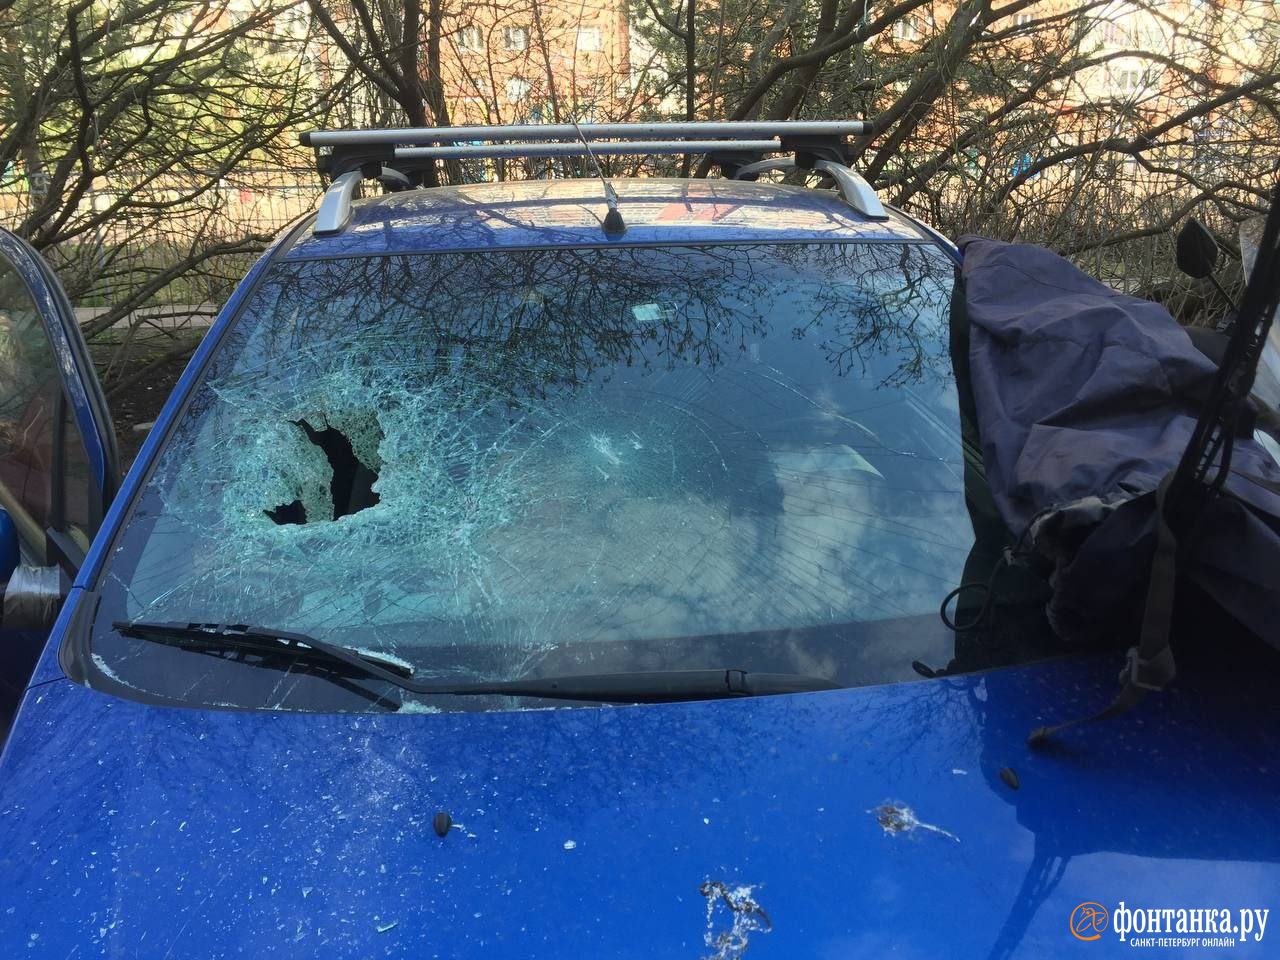 В Невском районе мужчина камнем разбил лобовое стекло машины. Он видел то, что не видят другие